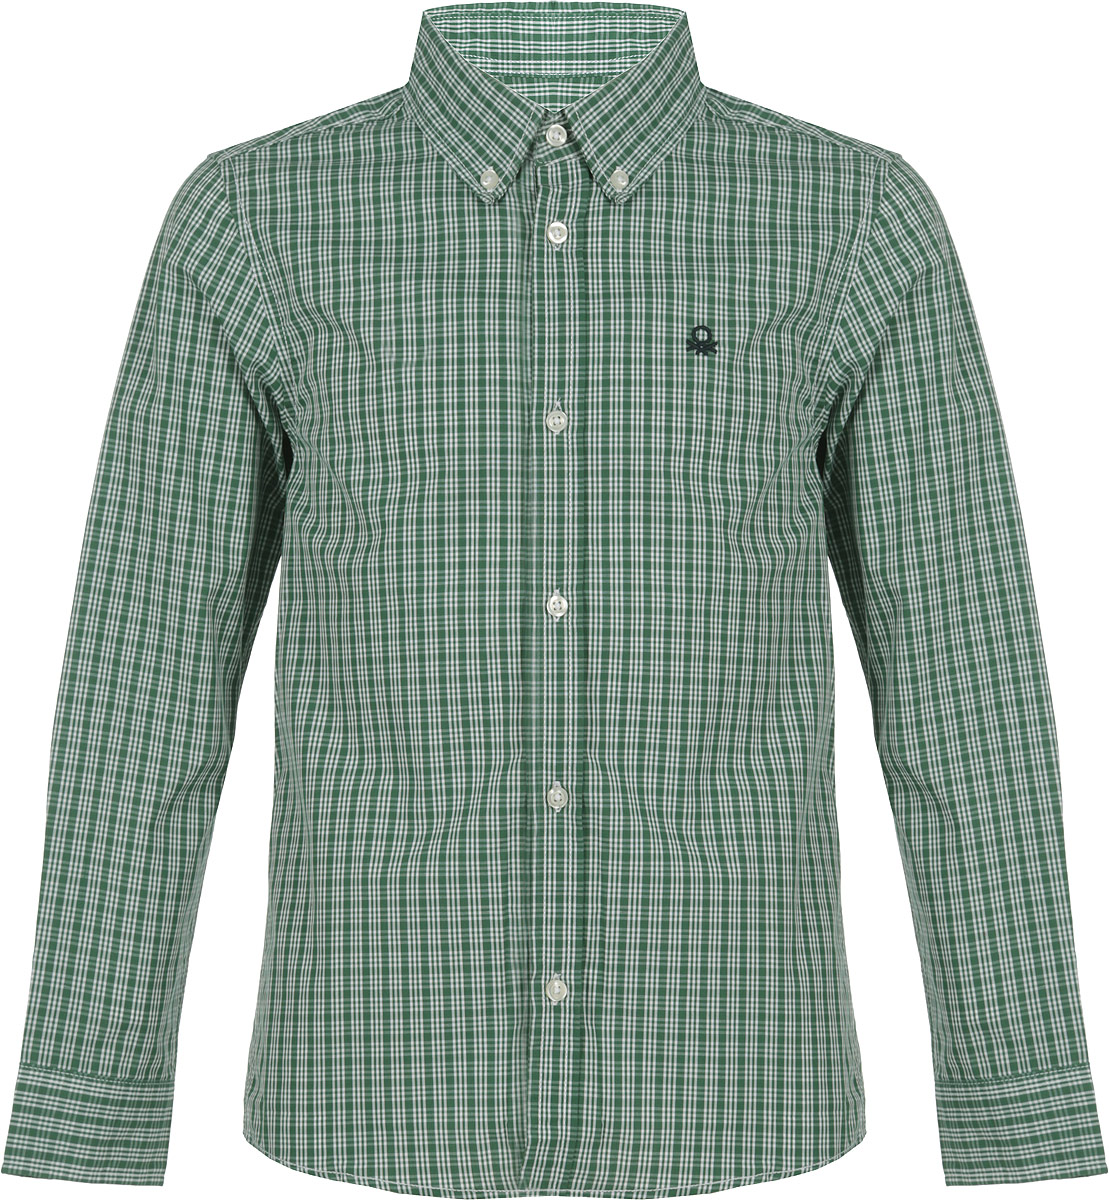 Рубашка для мальчика United Colors of Benetton, цвет: зеленый. 5DU65Q200_992. Размер XL (150)